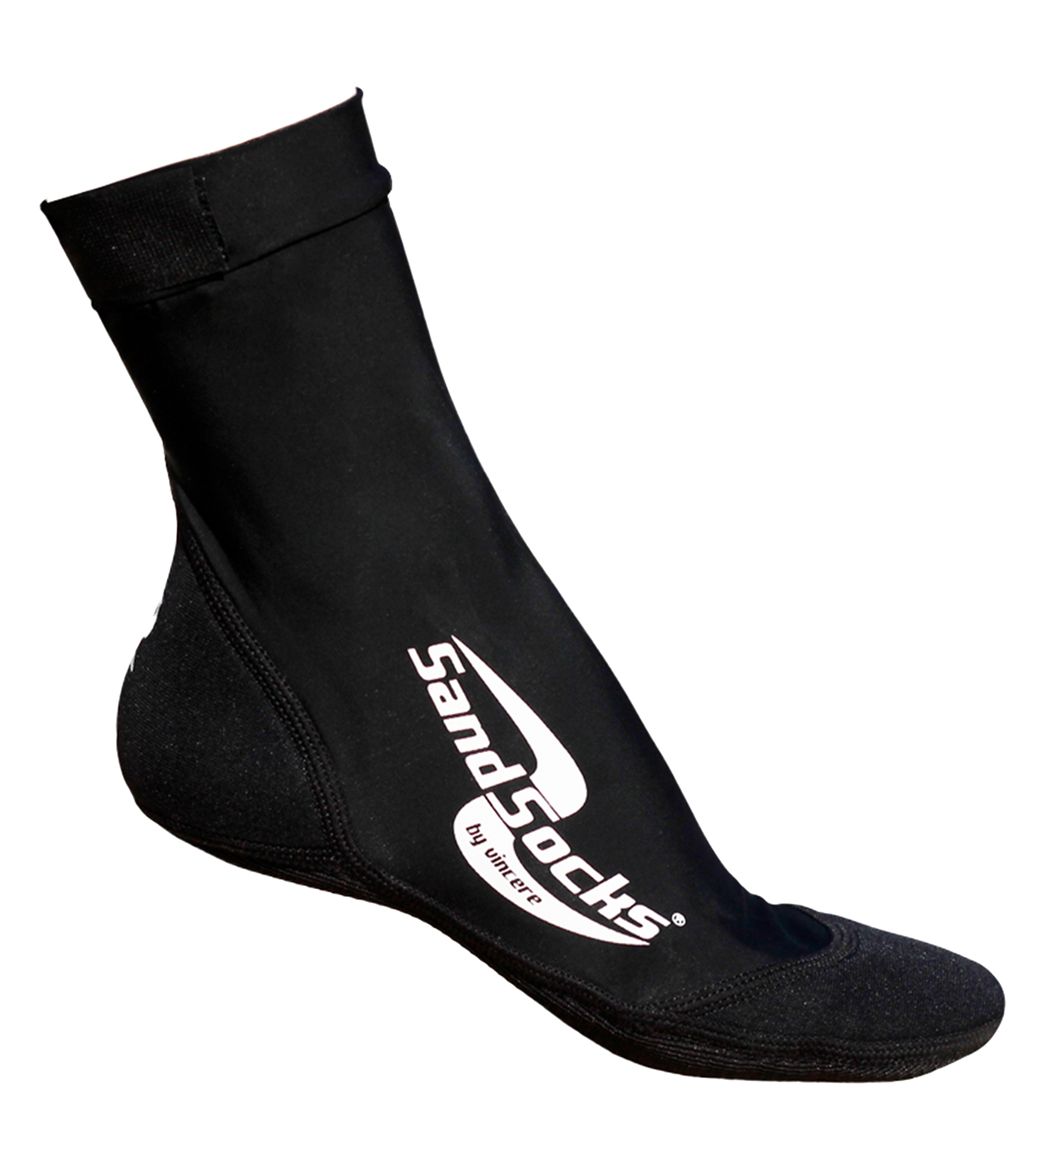 Sand Socks Sandwater Shoes - Black Men's 10.5-12; Women's 12-14 Size 10.5-12 - Swimoutlet.com